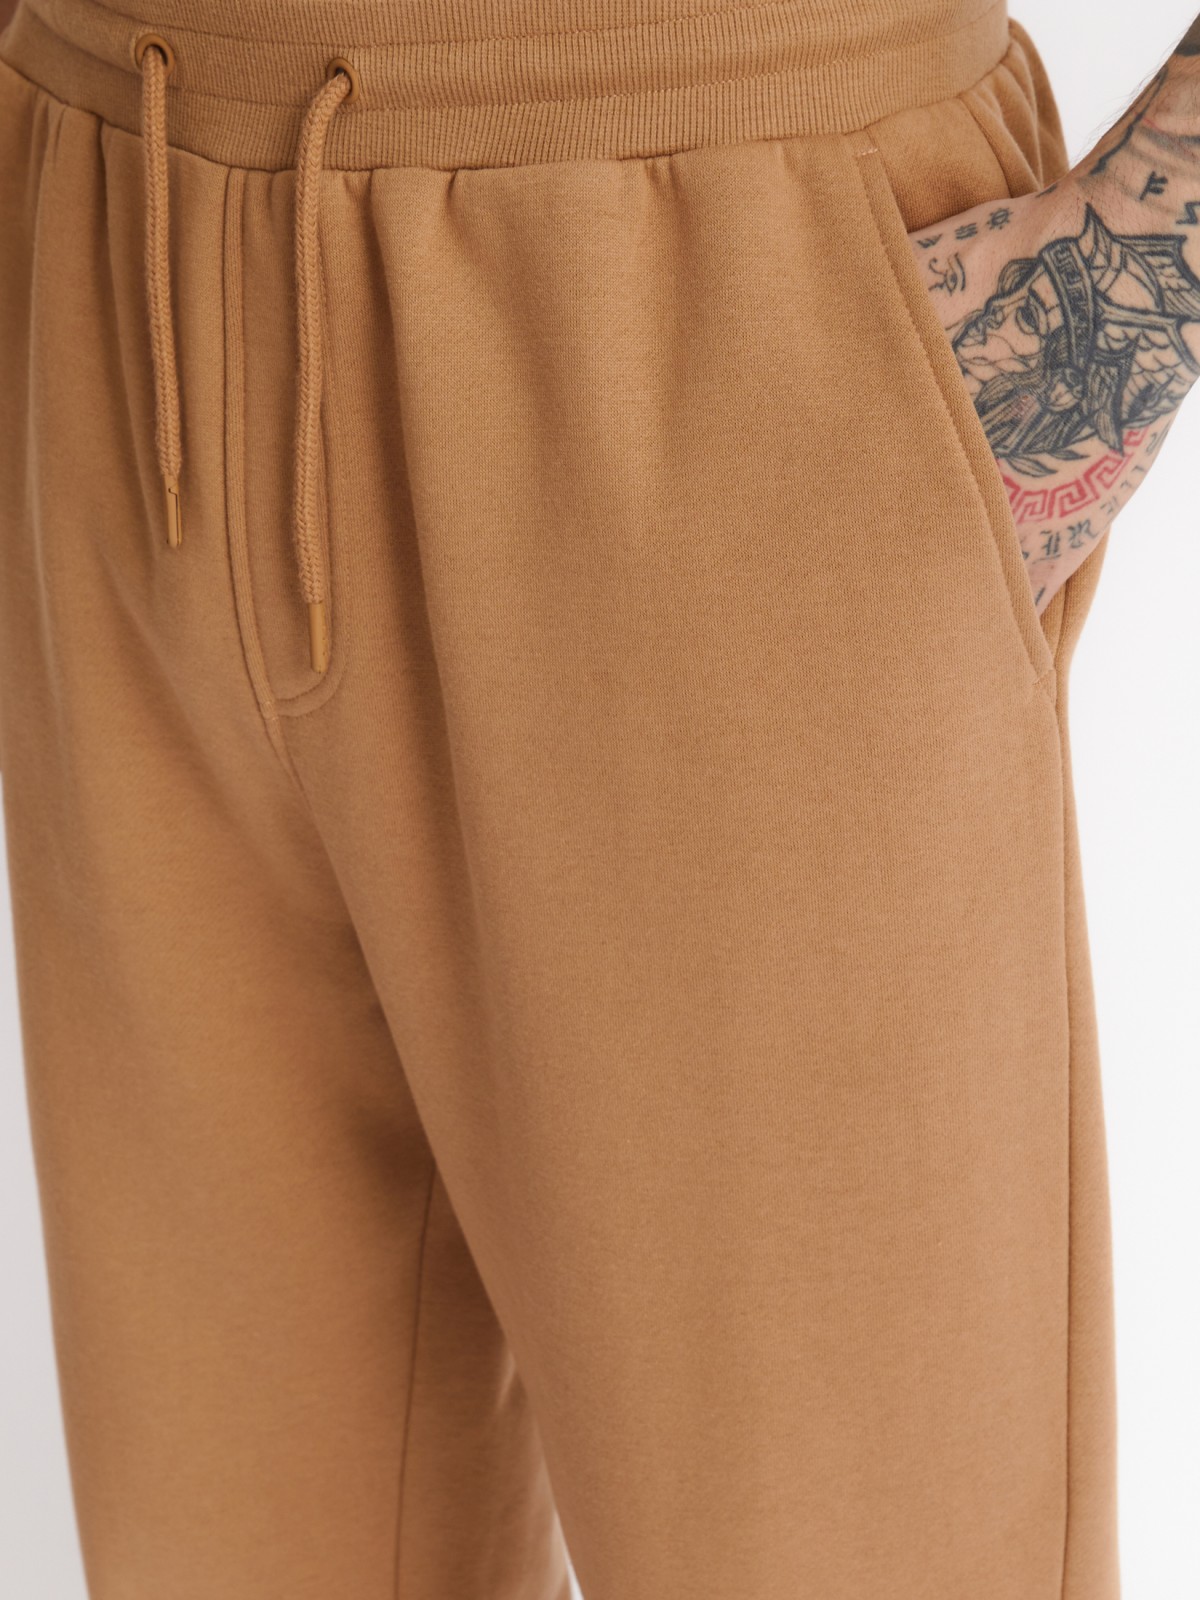 Утеплённые трикотажные брюки-джоггеры в спортивном стиле zolla 213327675022, цвет бежевый, размер XS - фото 5